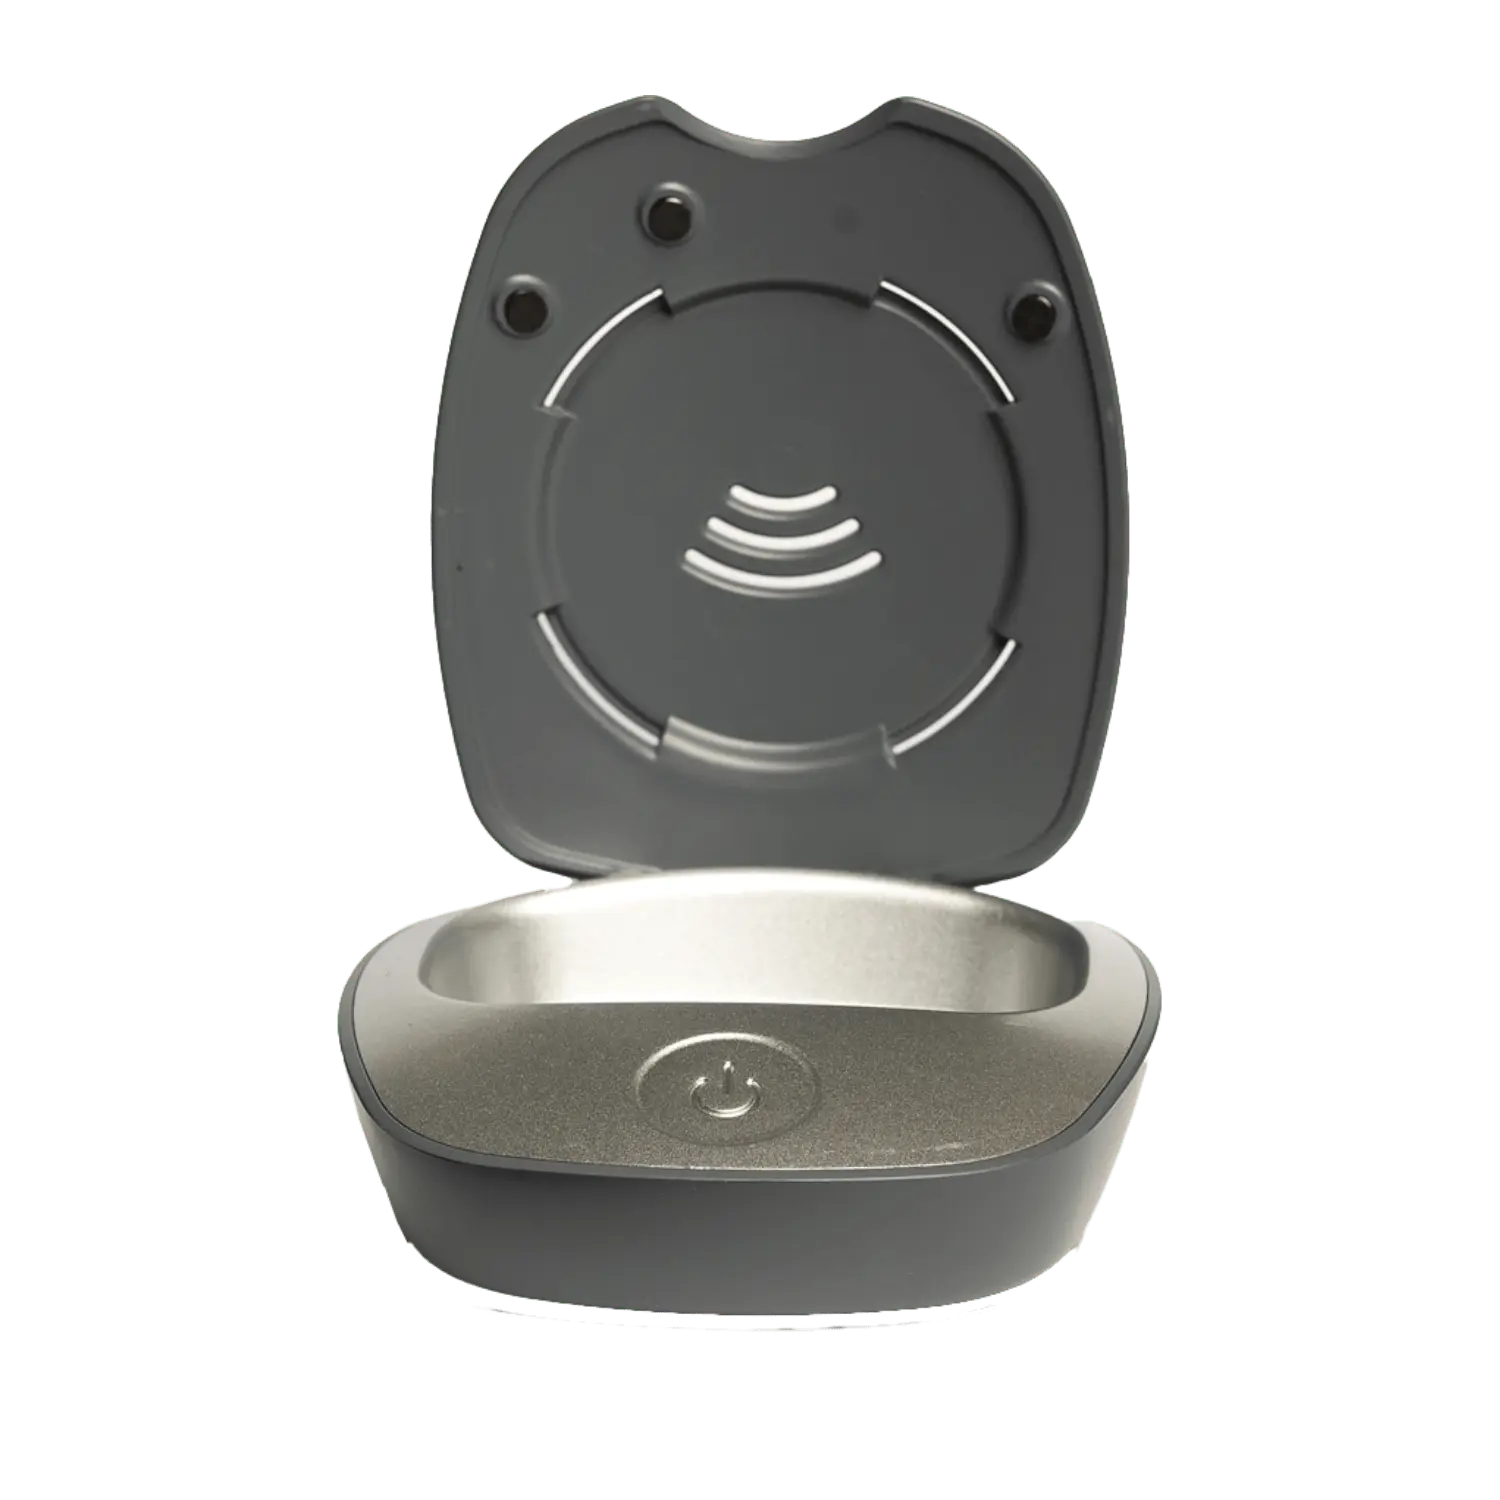 Marmed - Aparaty Słuchowe - Badanie Słuchu - Stacja UV - Smart Dry